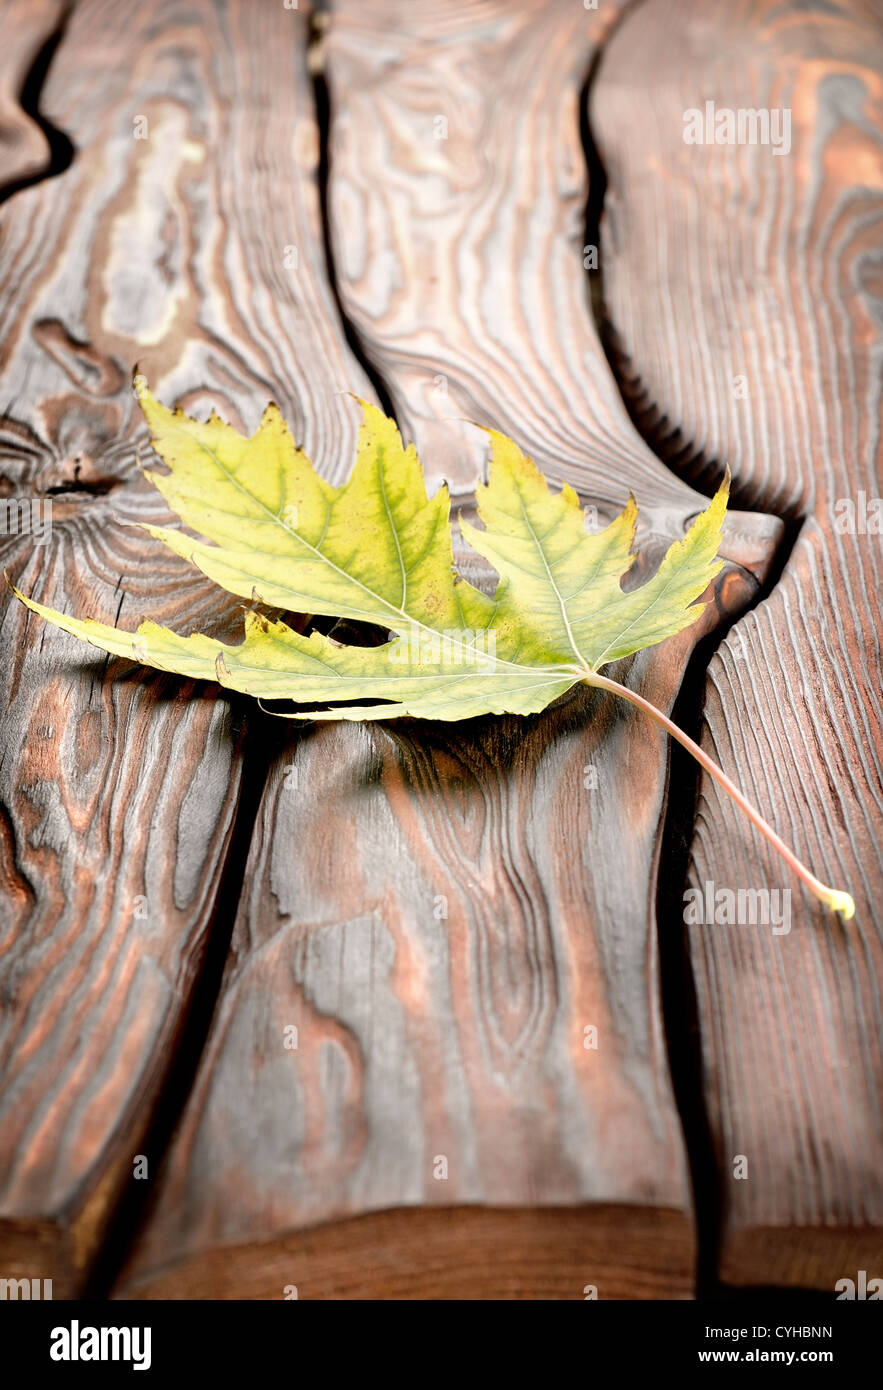 Decoración de otoño en una superficie de madera vieja Foto de stock